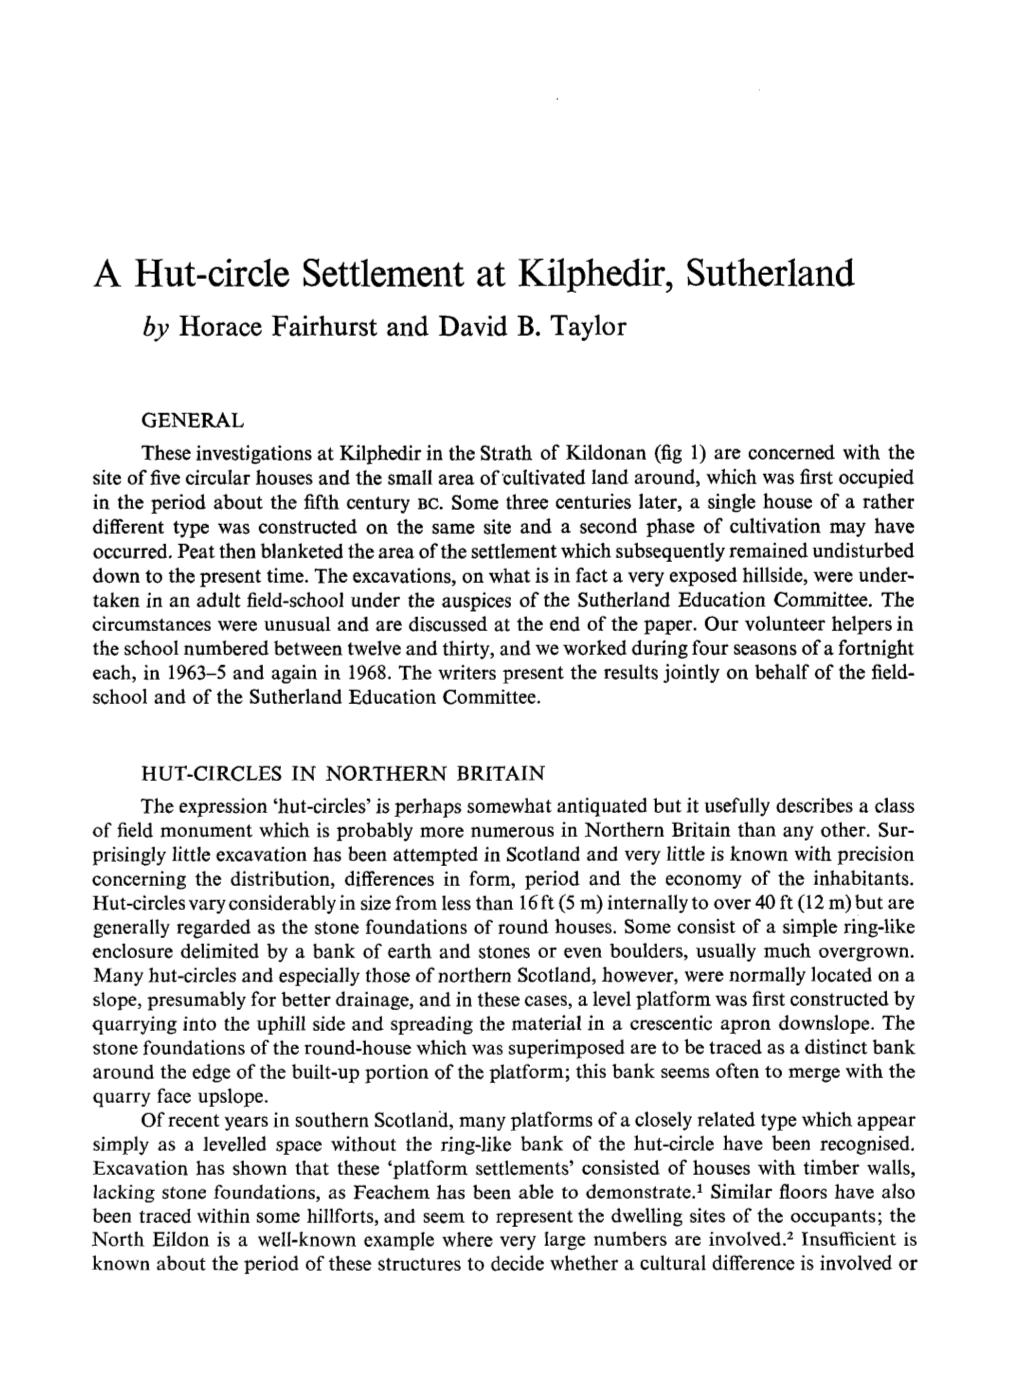 A Hut-Circle Settlement at Kilphedir, Sutherland by Horace Fairhurs David an T